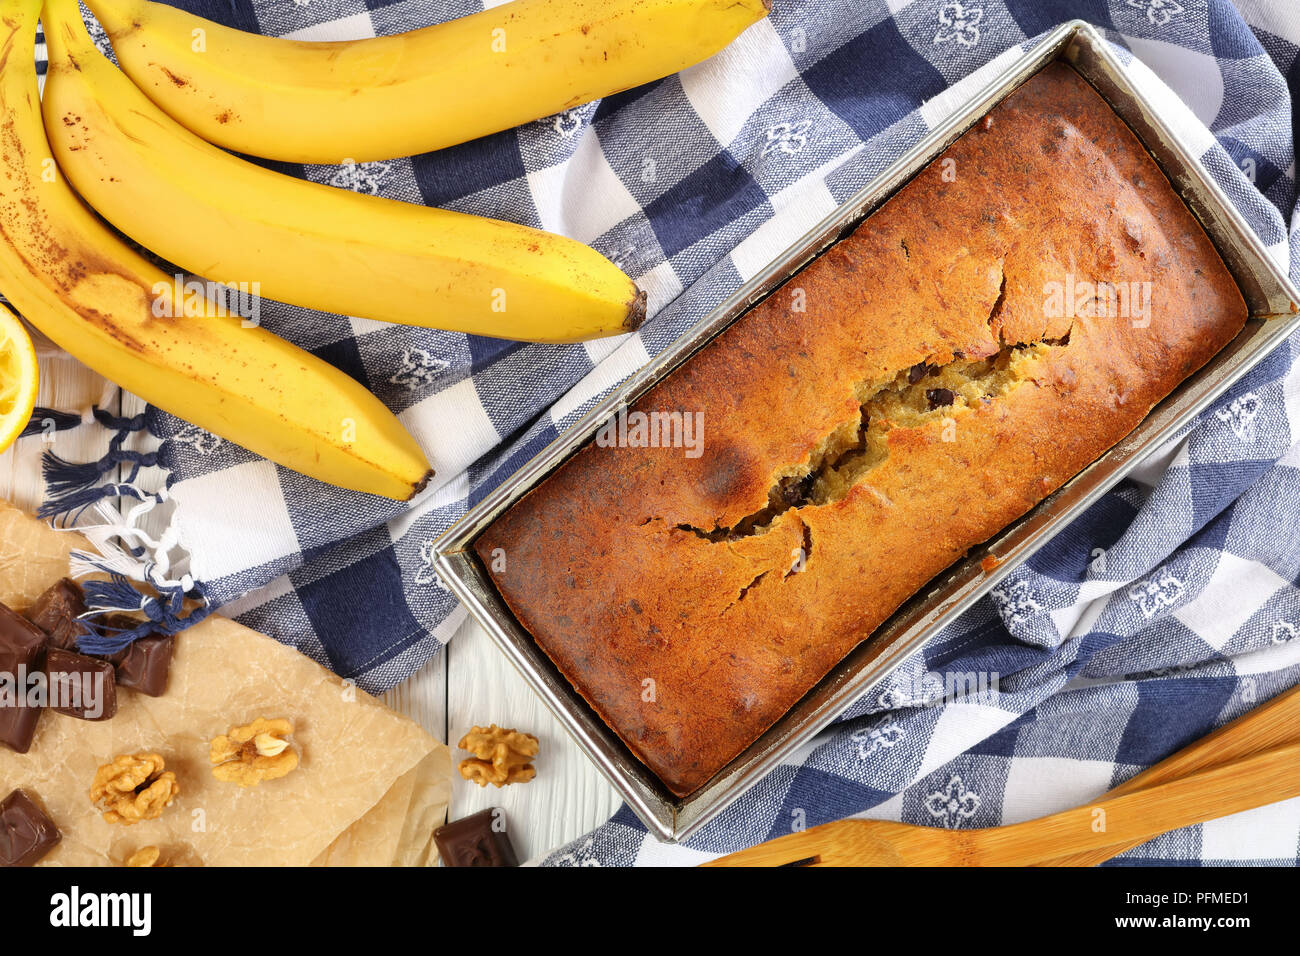 Délicieux chaud fraîchement cuit le pain de banane avec des noix et des morceaux de chocolat dans un moule à pain avec des essuie-tout, des bananes mûres et ingrédients sur ta en bois Banque D'Images